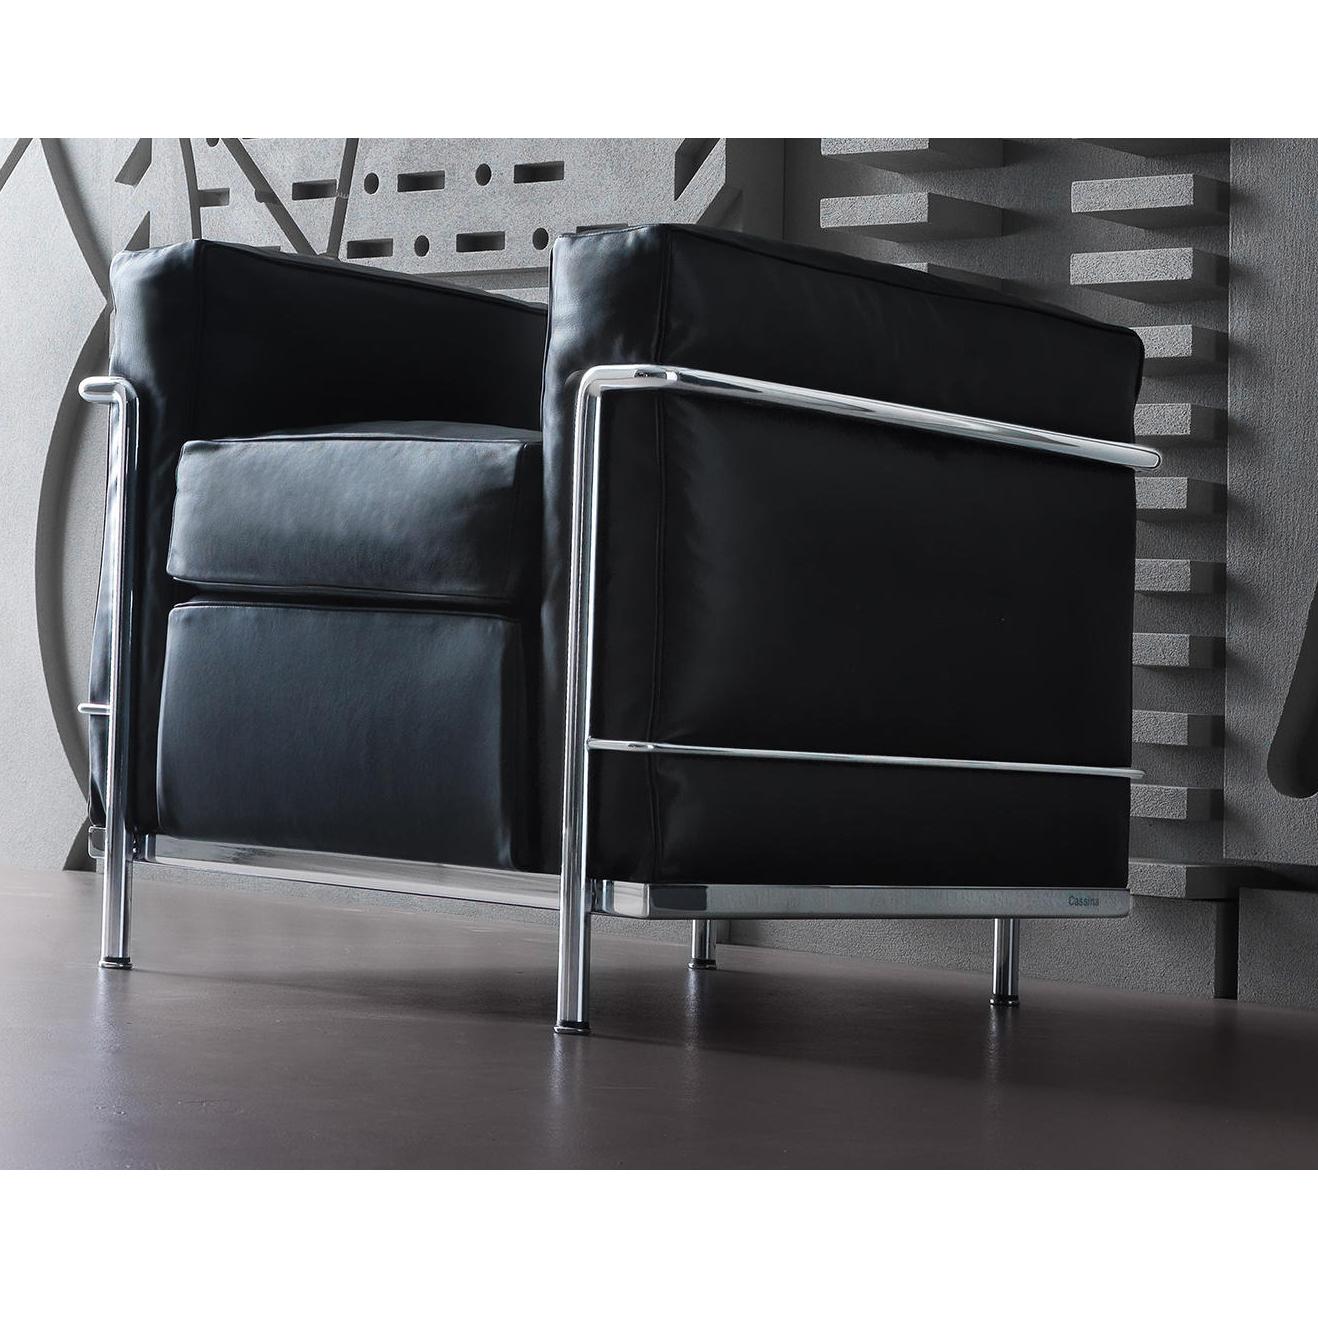 Fauteuil conçu par Le Corbusier, Pierre Jeanneret, Charlotte Perriand en 1928.
Fabriqué par Cassina en Italie.

Intemporel, unique et profondément authentique, le fauteuil LC2 a joué un rôle dans l'histoire du design mobilier, devenant une icône